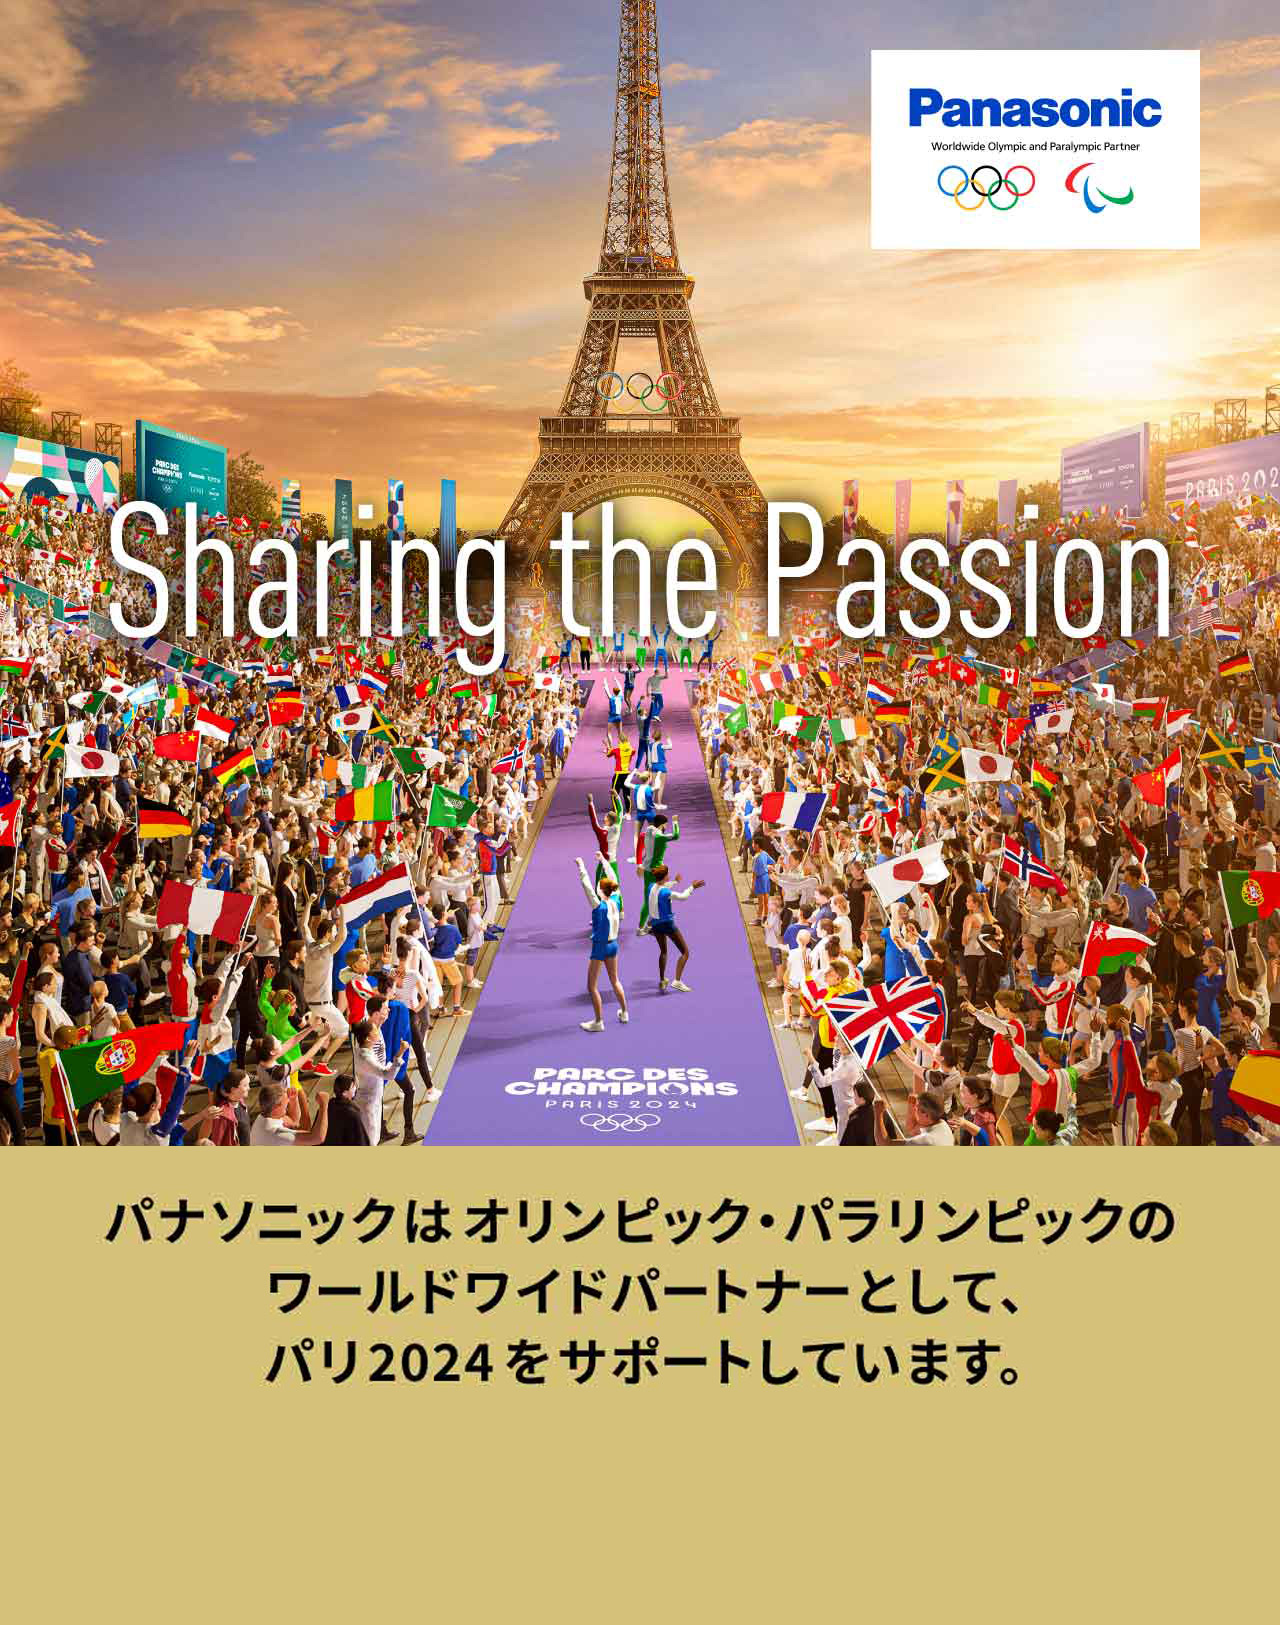 パナソニックはオリンピック・パラリンピックのワールドワイドパートナーとして、パリ2024をサポートしています。